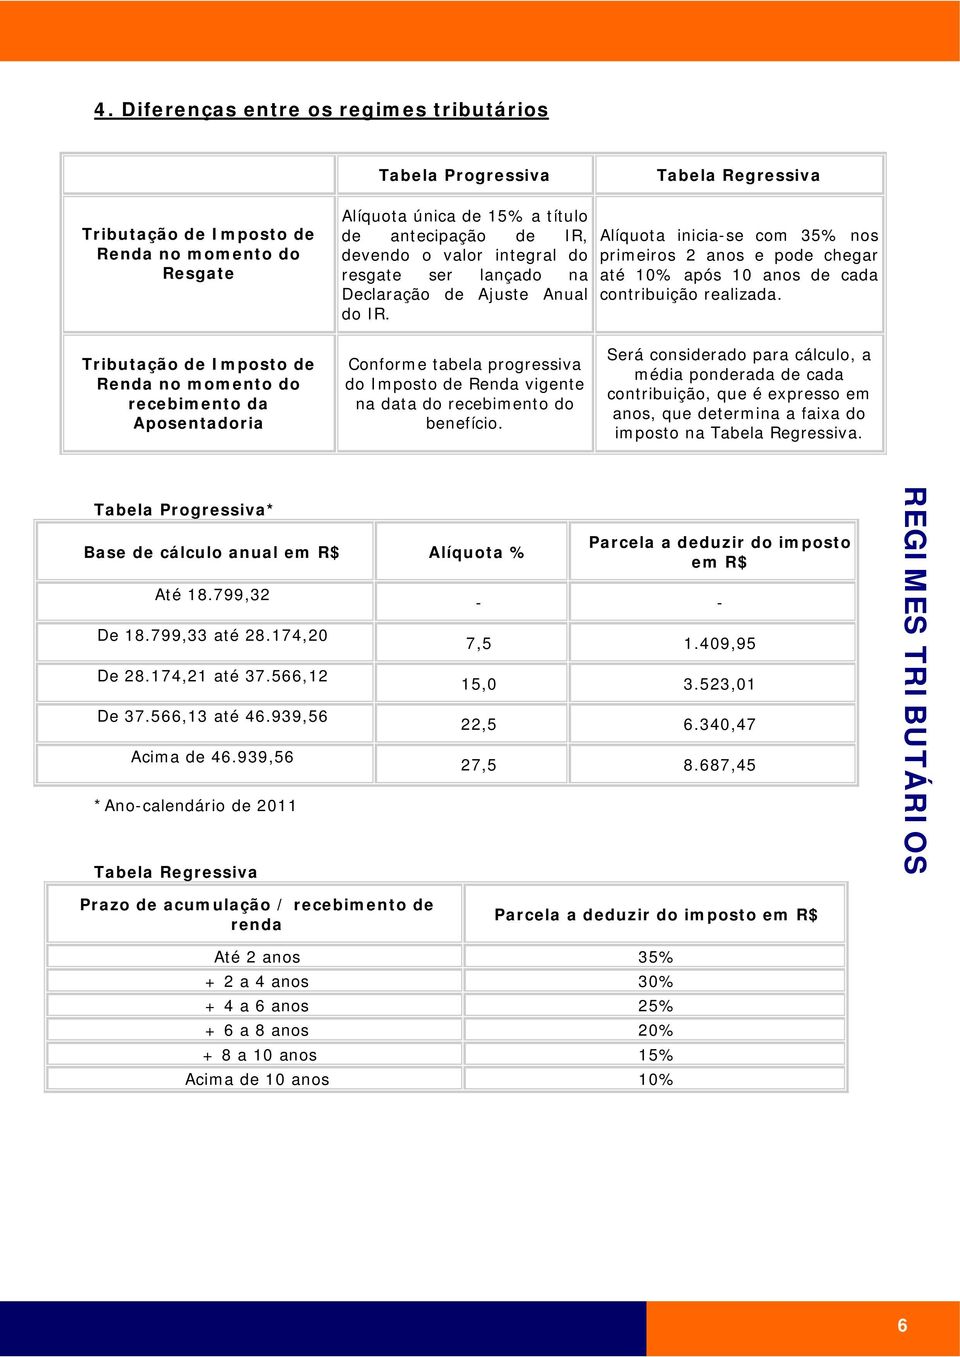 Tributação de Imposto de Renda no momento do recebimento da Aposentadoria Conforme tabela progressiva do Imposto de Renda vigente na data do recebimento do benefício.